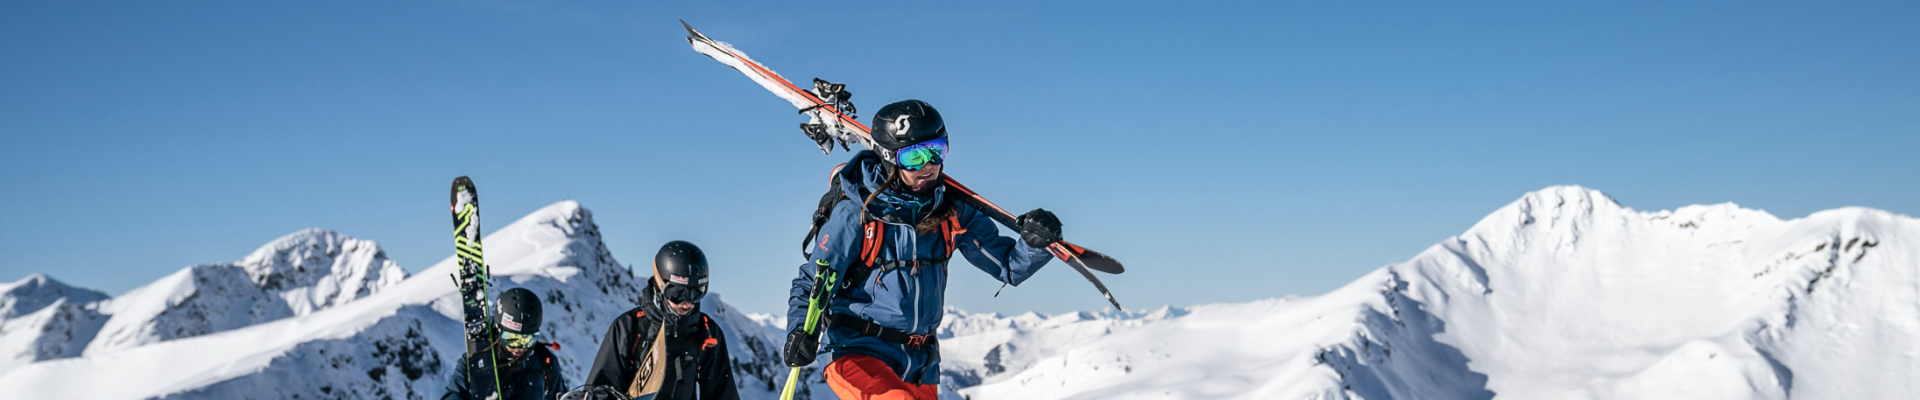 Groepsreizen wintersport naar Oostenrijk